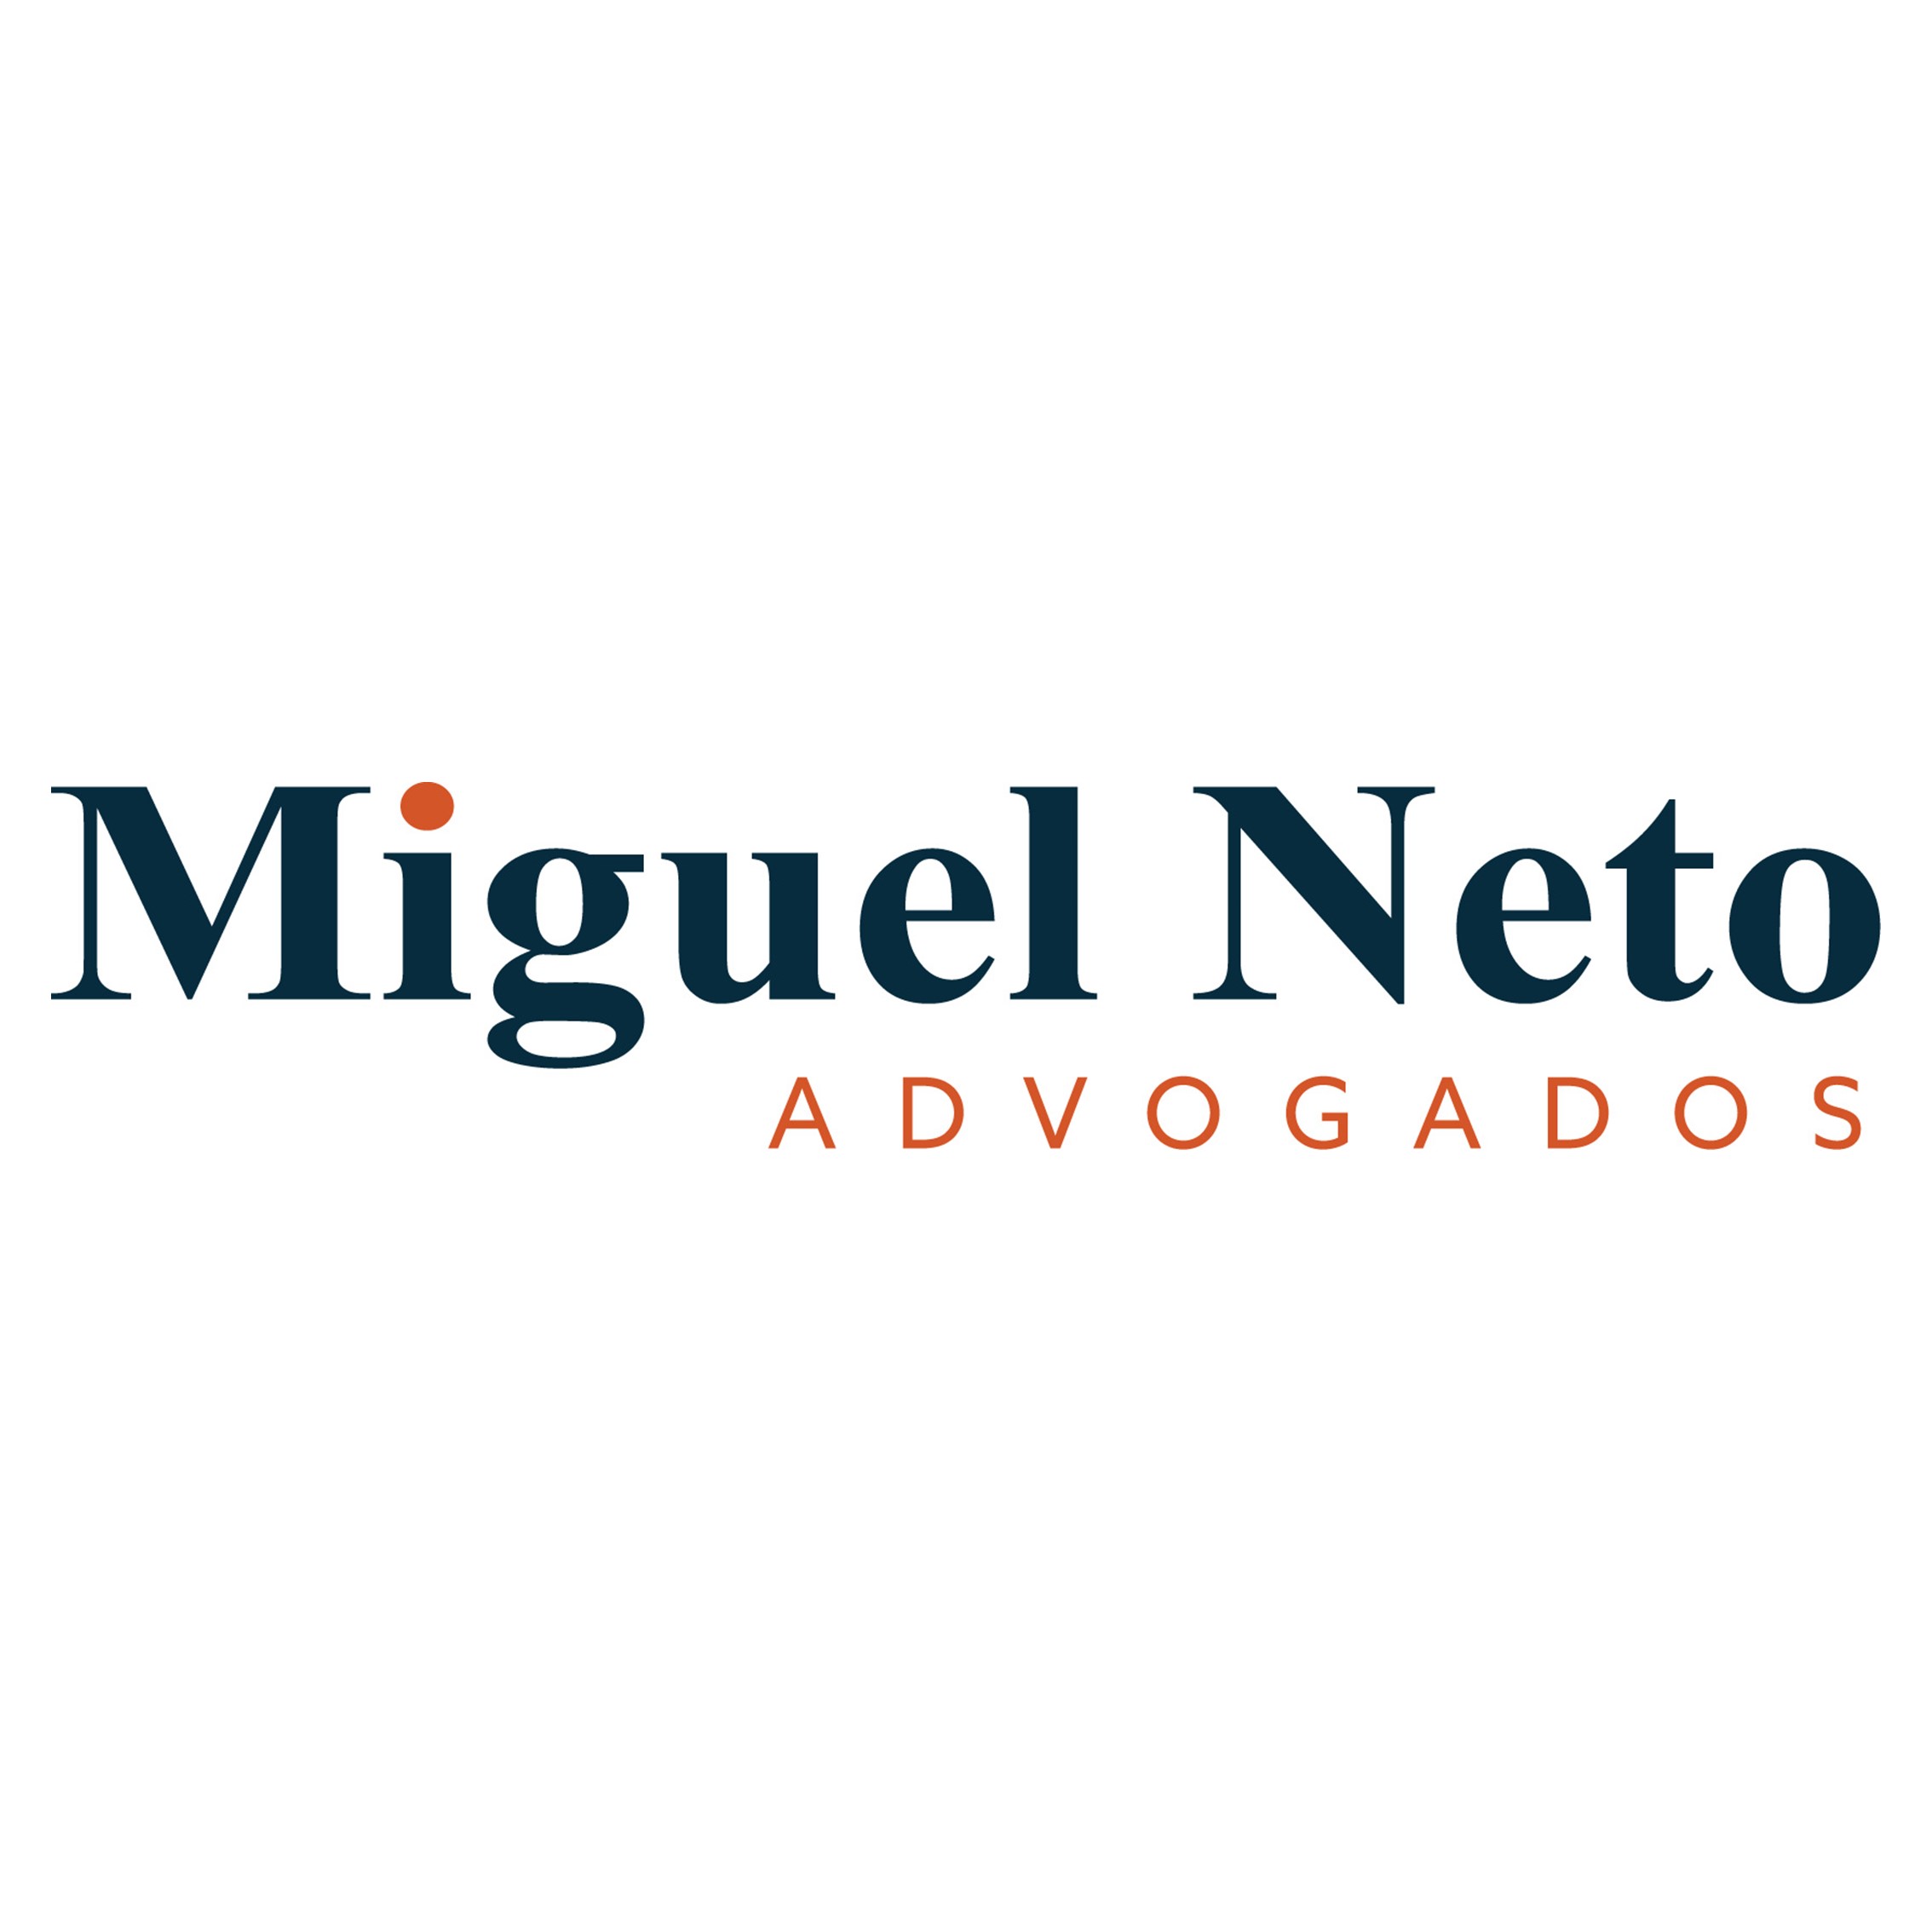 Miguel Neto Advogados